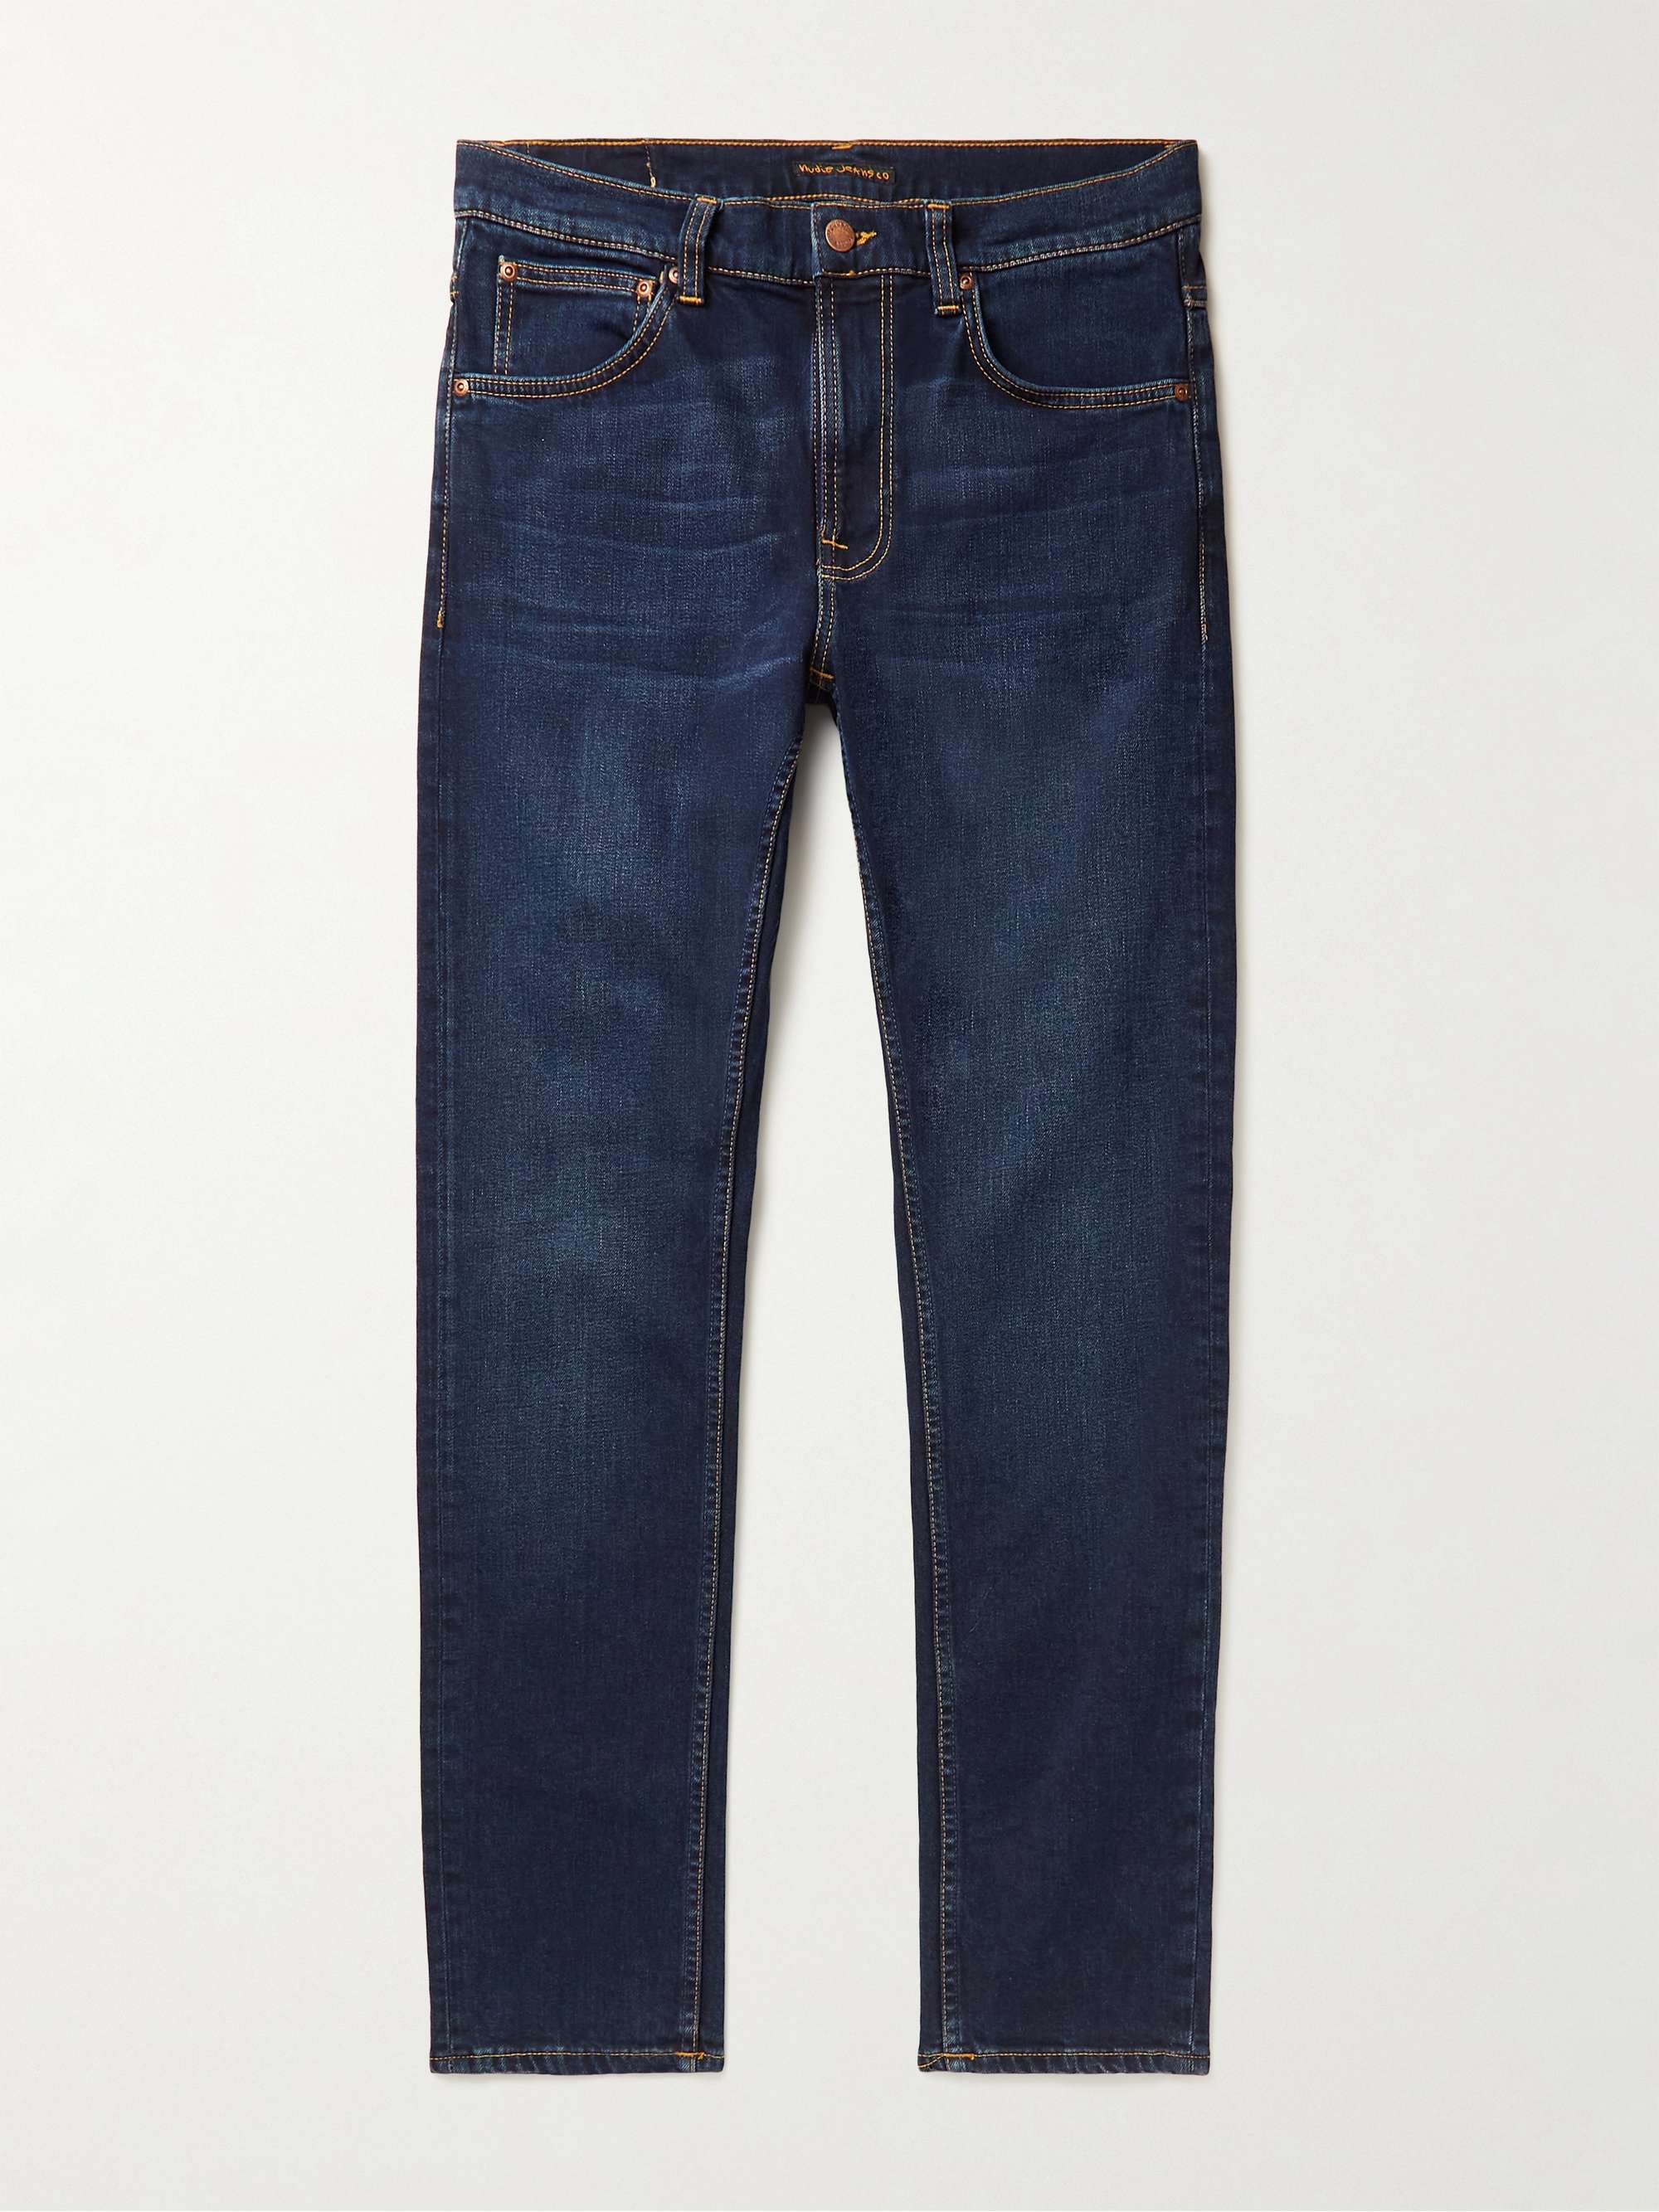 NUDIE JEANS Lean Dean Slim-Fit Organic Jeans | MR PORTER